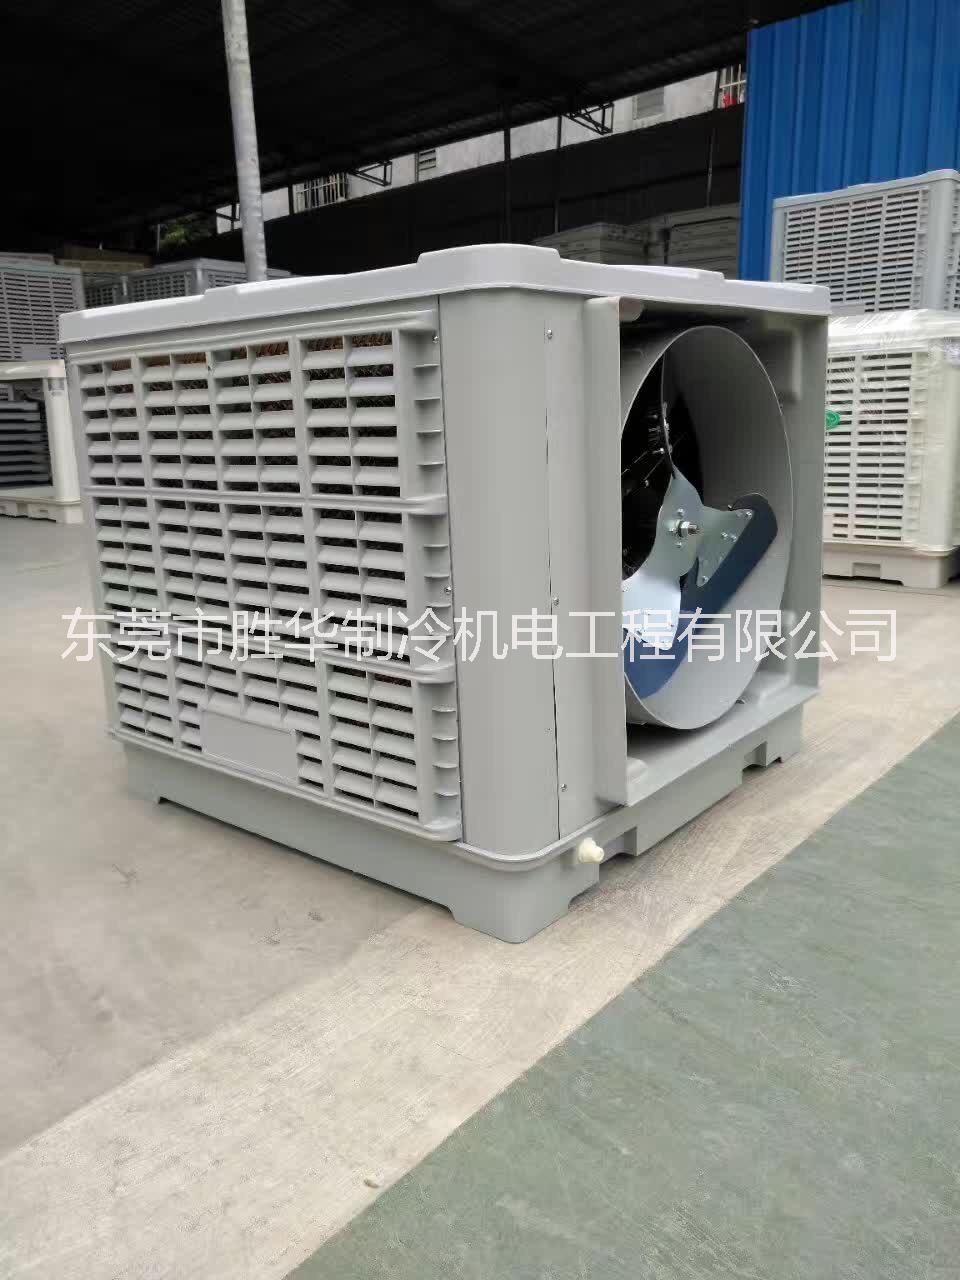 东莞环保空调厂家直销冷风机水冷空调批发价格节能环保空调安装工程